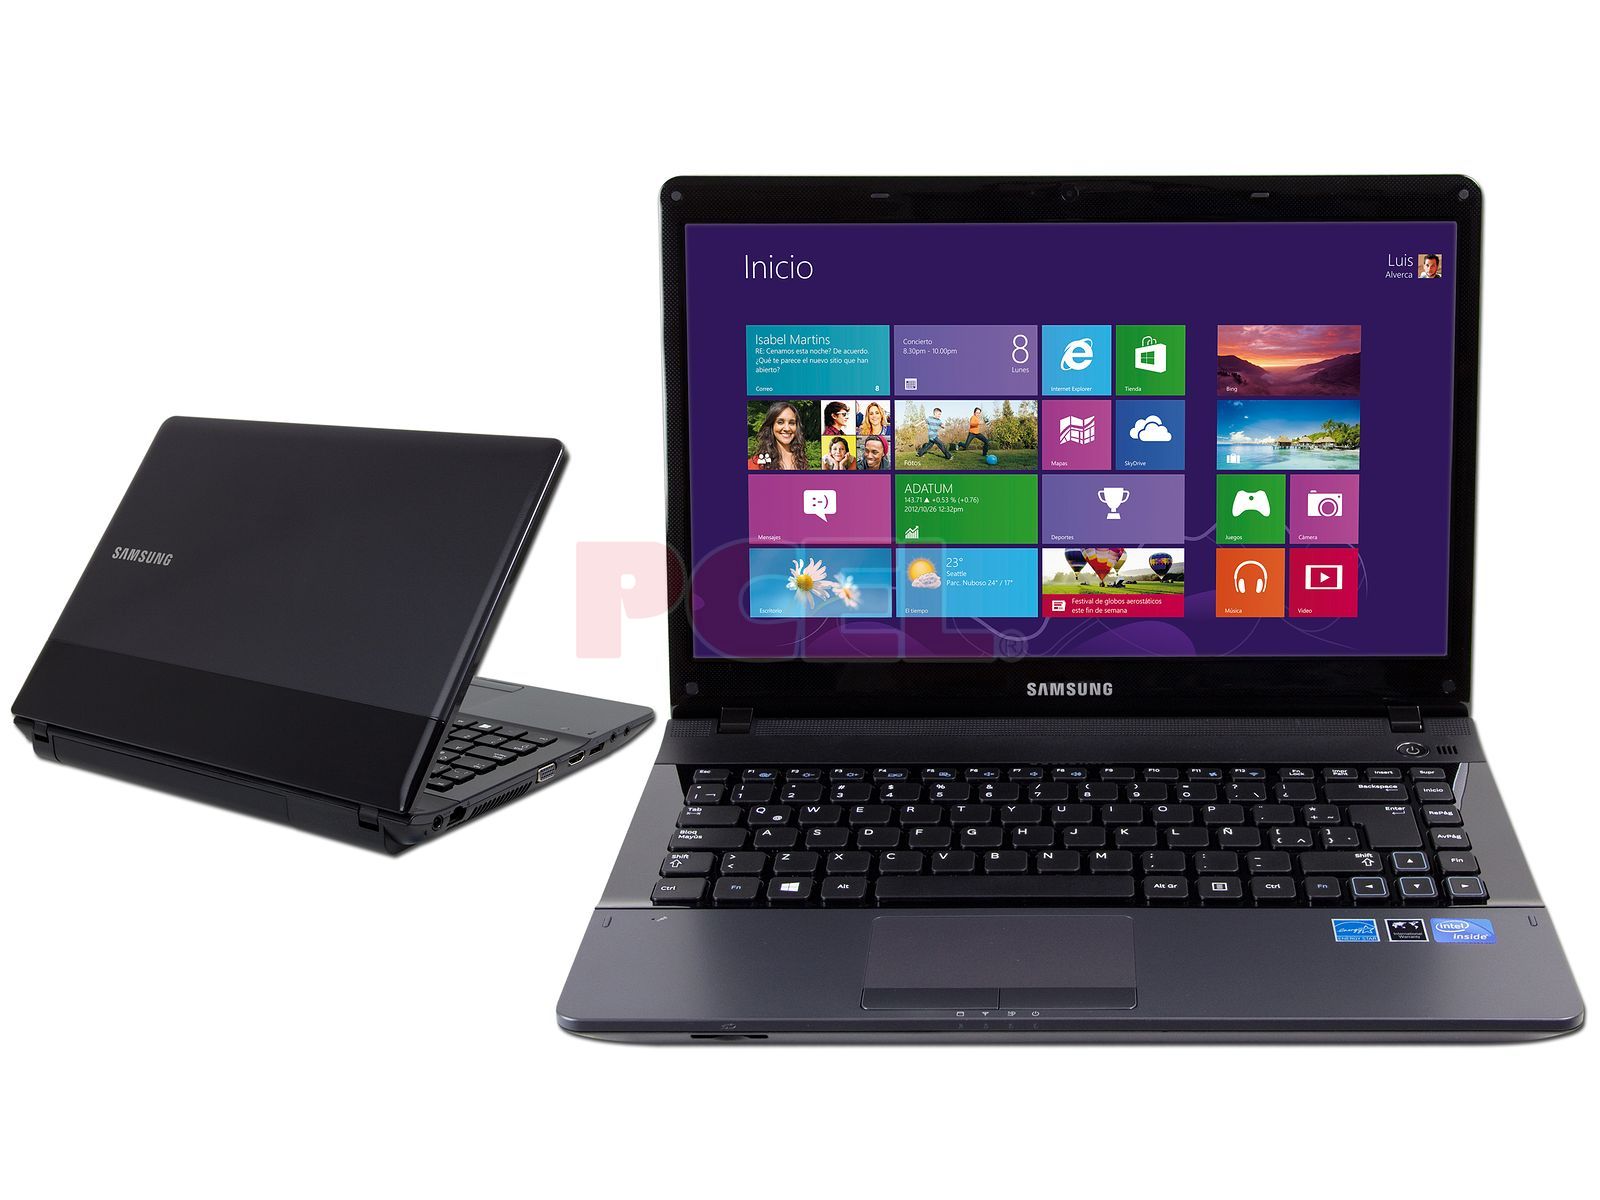 Laptop Samsung NP300E4C-A0KMX: Procesador Intel Celeron B820 ( GHz),  Memoria de 2 GB DDR3, Disco Duro de 320 GB, Pantalla HD LED de 14